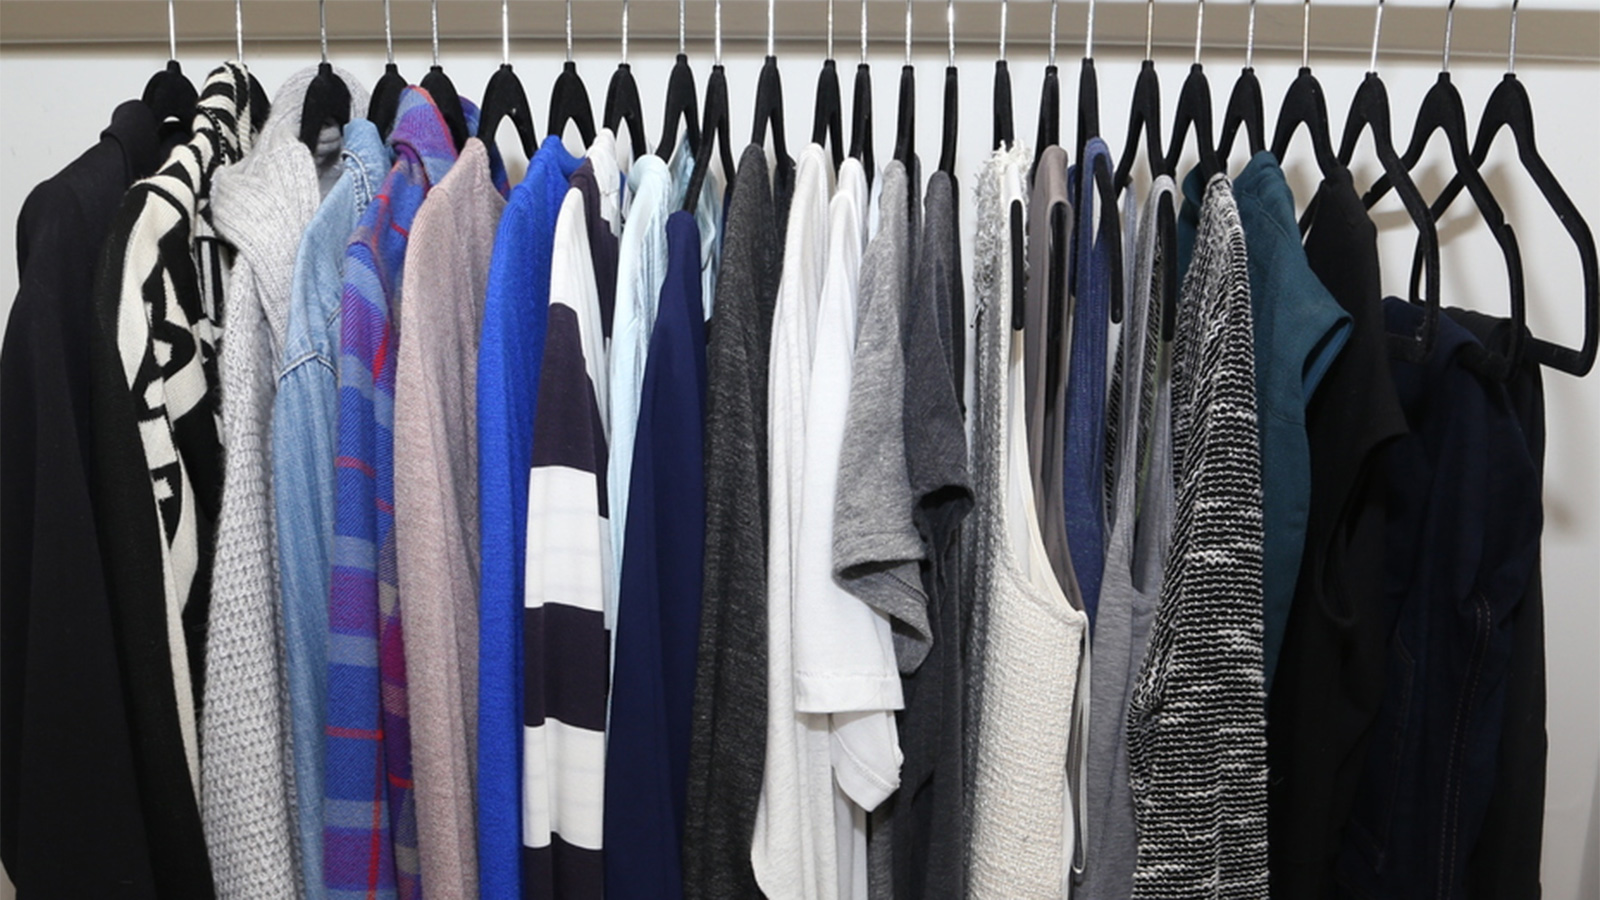 ‪ترتيب الملابس داخل الخزانة حسب النوعيات المماثلة والألوان المتناسقة‬ (مواقع التواصل الاجتماعي)